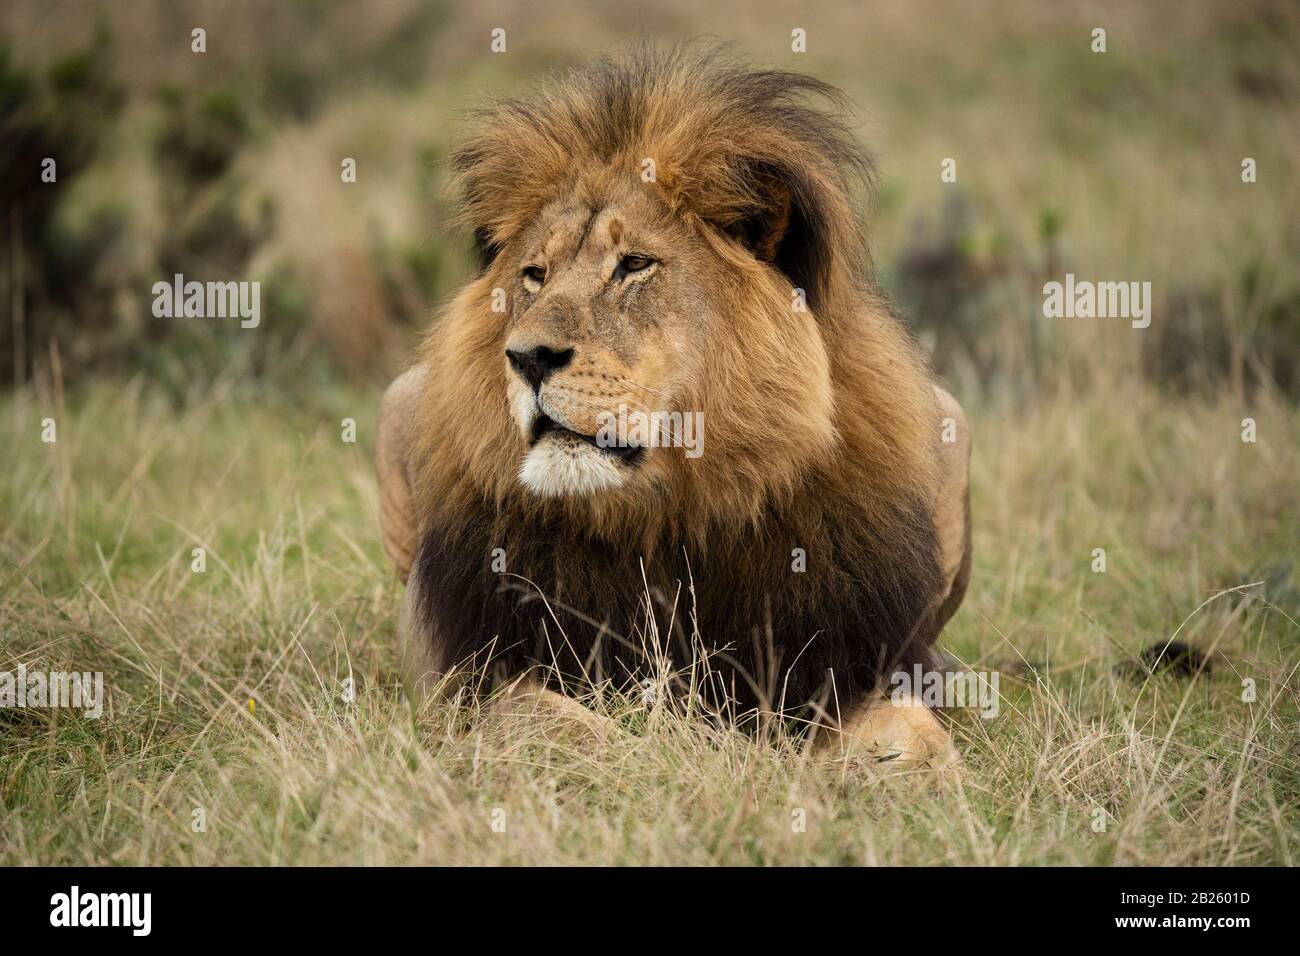 Homme Lion, Panthera leo, Gondwana Game Reserve, Afrique du Sud Banque D'Images